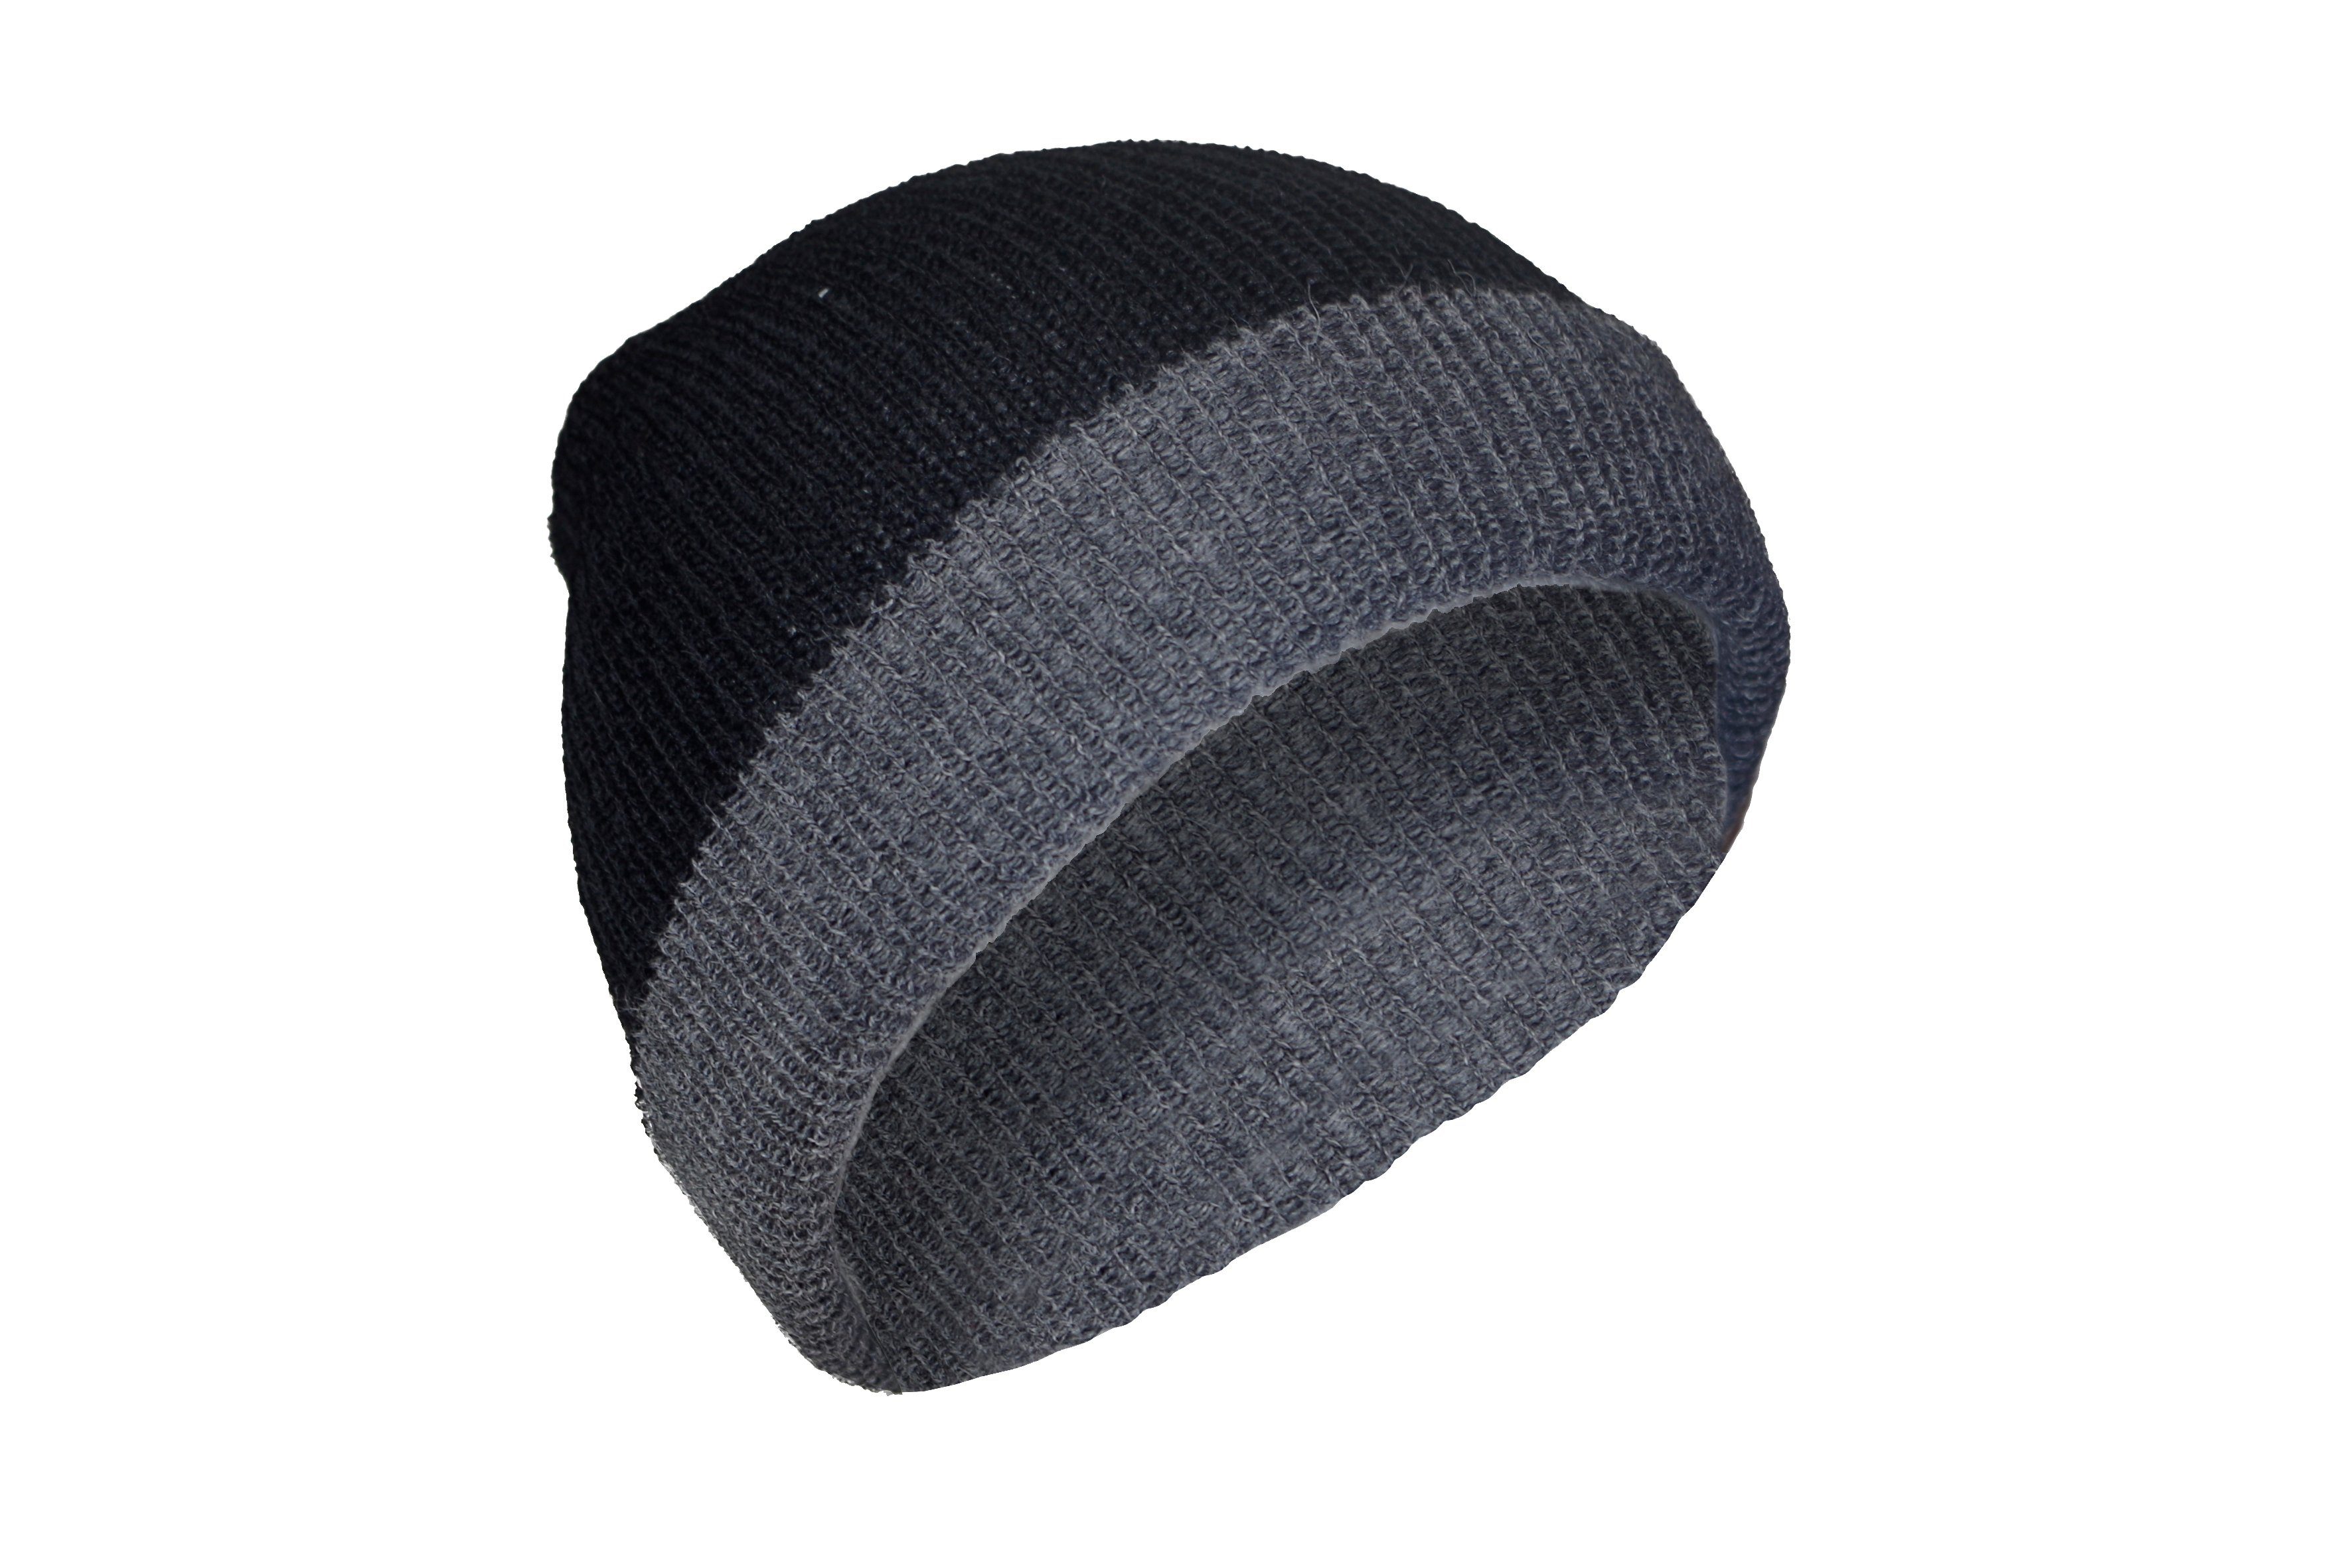 Posh Alpaka Gear / Strickmütze schwarz 100% Mütze Alpakawolle Rettolana aus grau